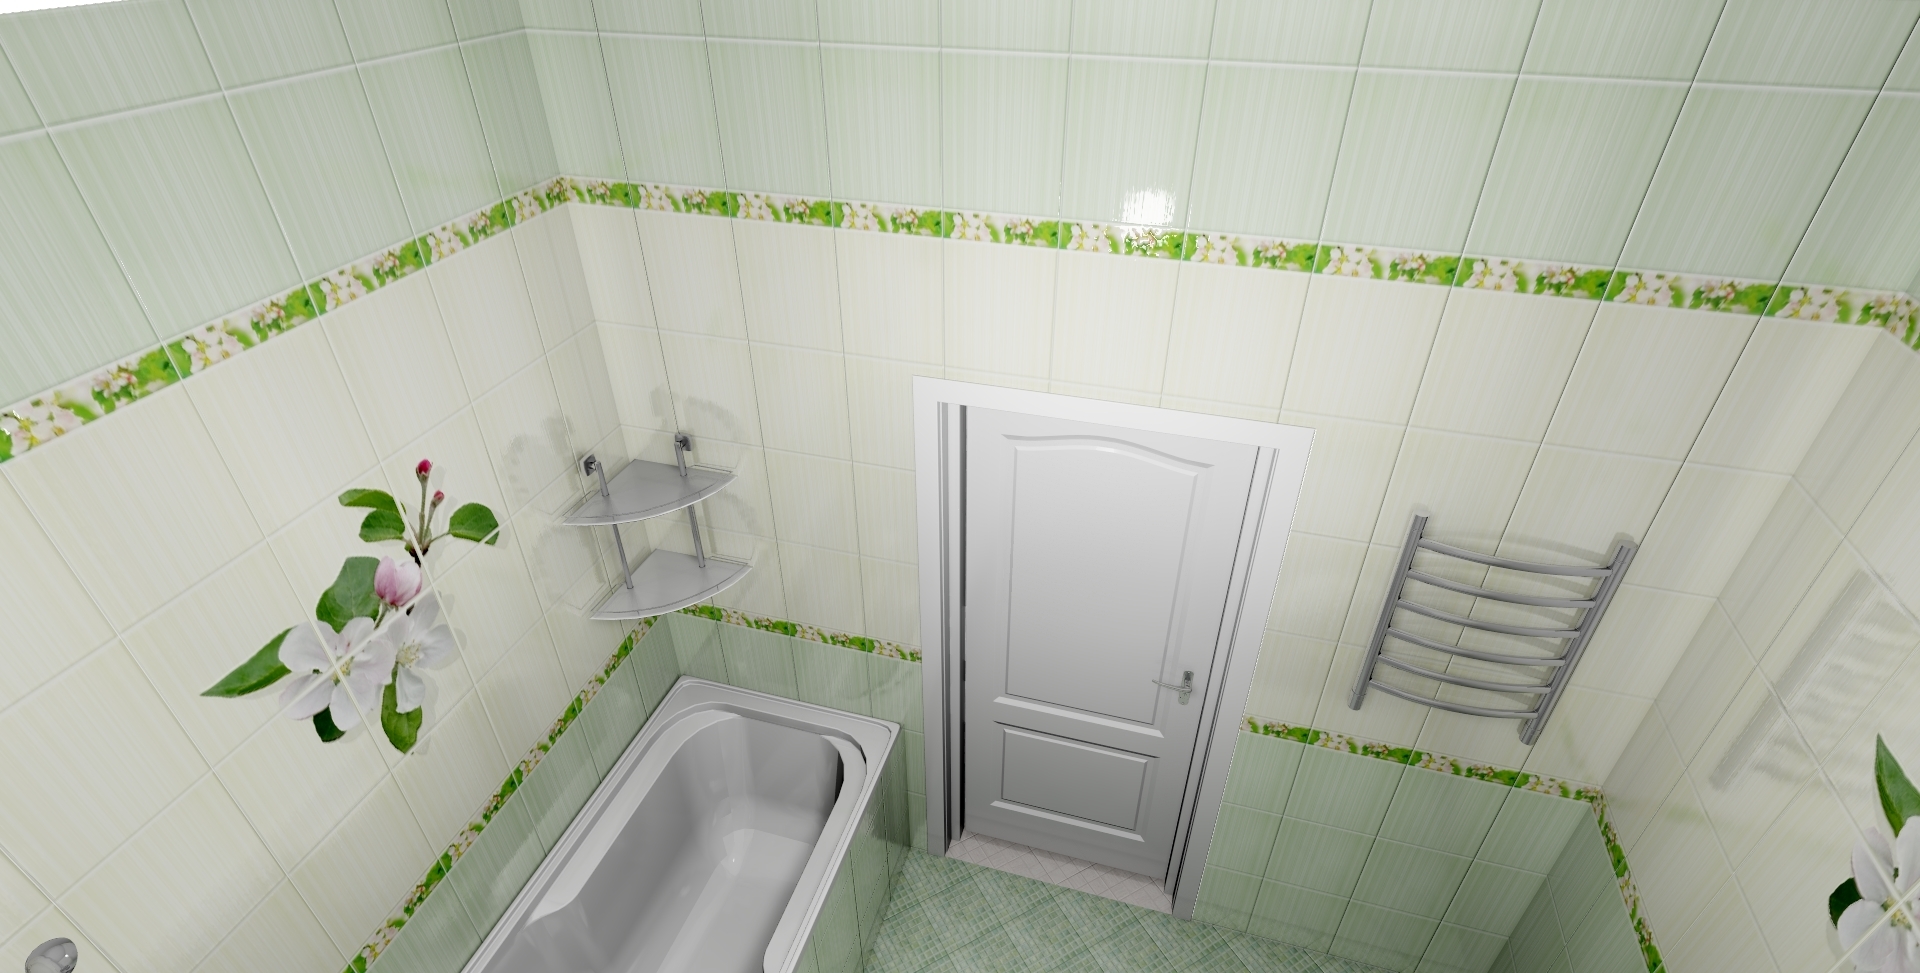 Отделка стен в ванной - 85 фото идей отделки и красивых вариантов оформления ванной